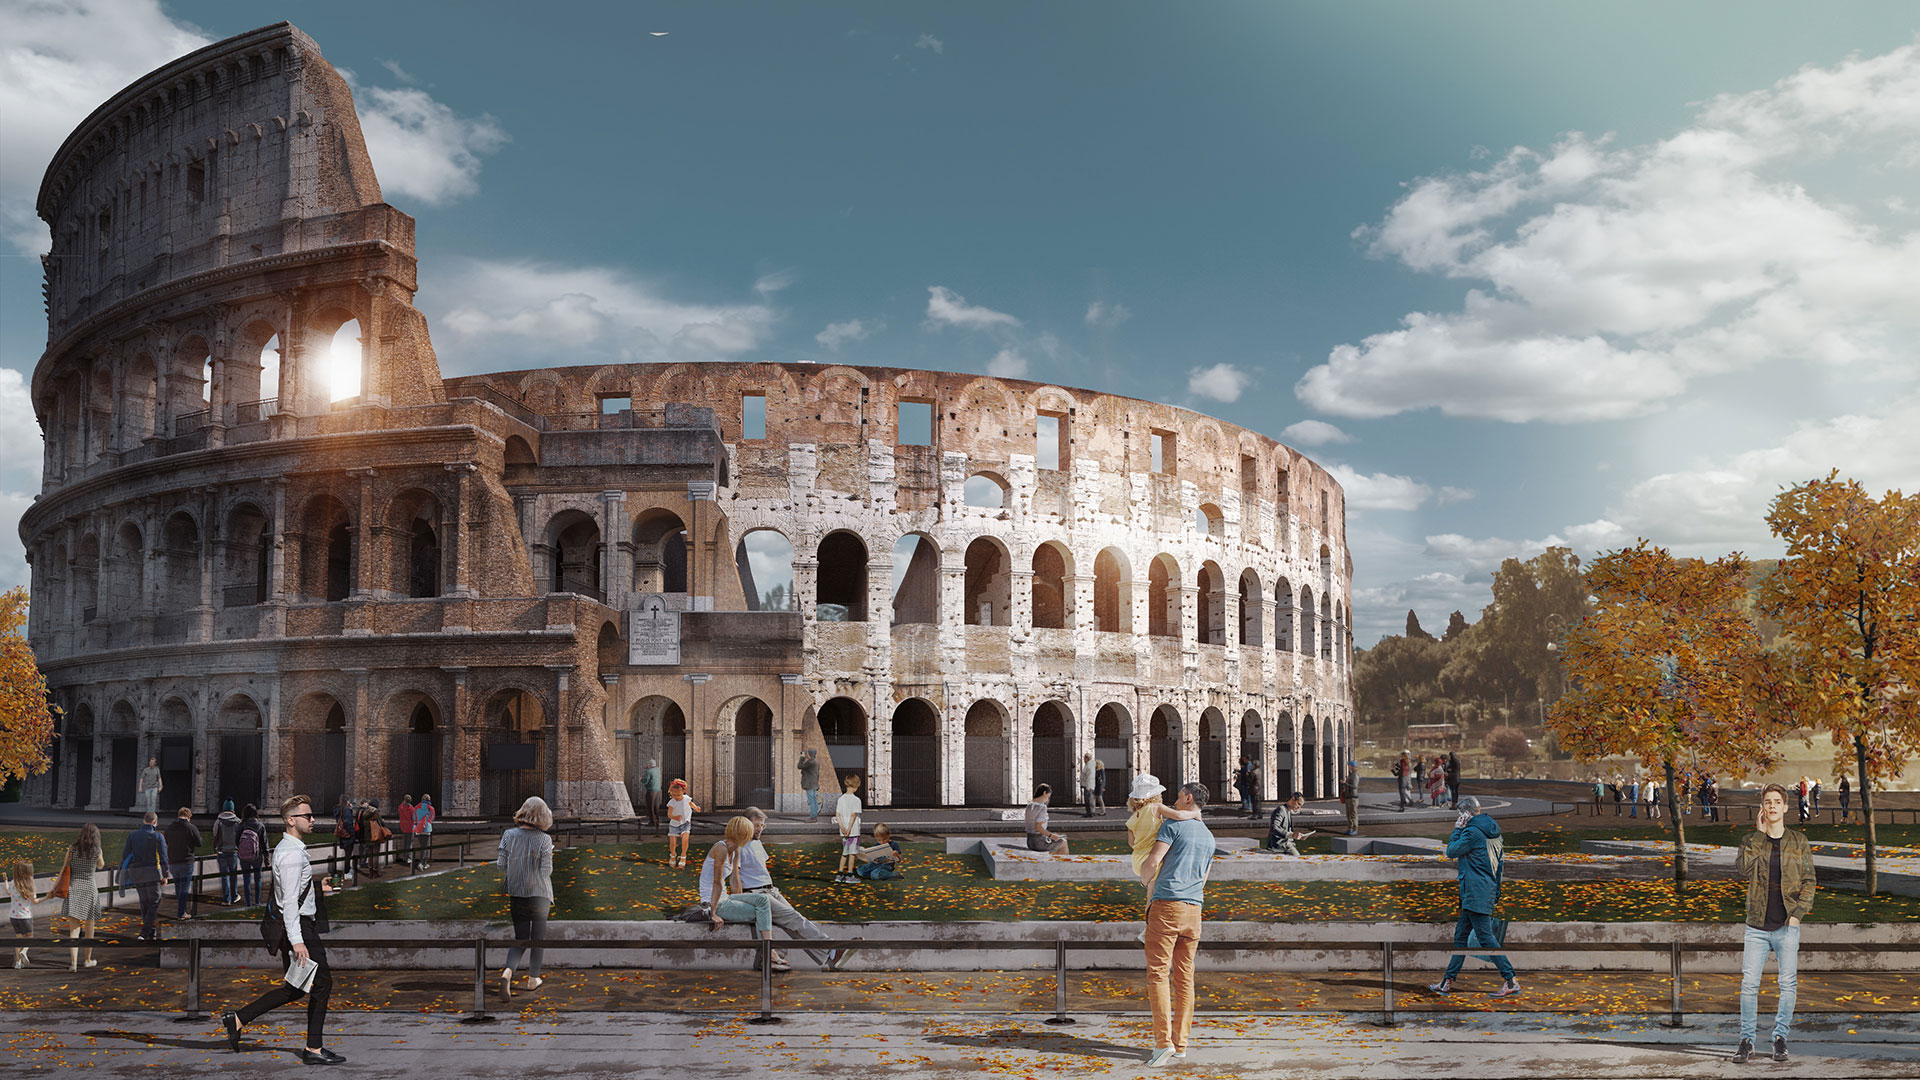 Private: Colosseum Square, Rome